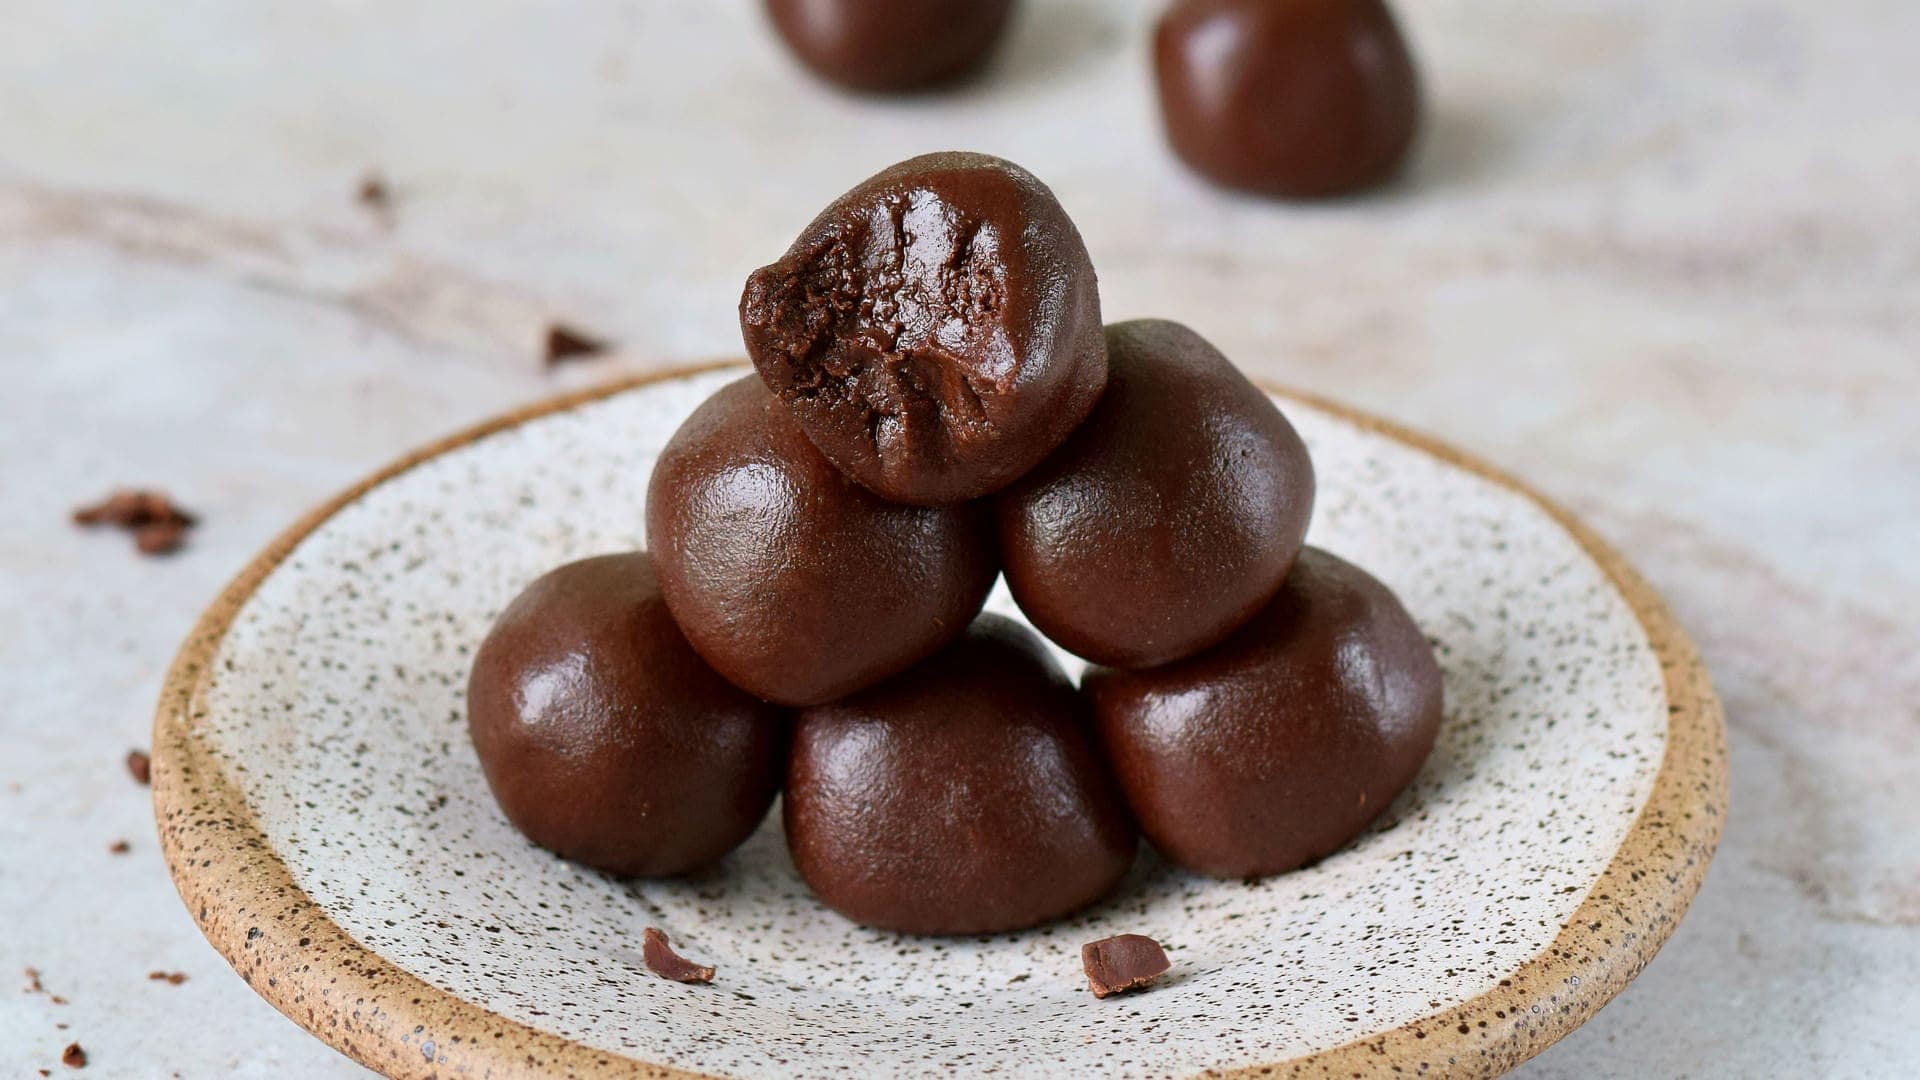 homemade chocolate balls on plate